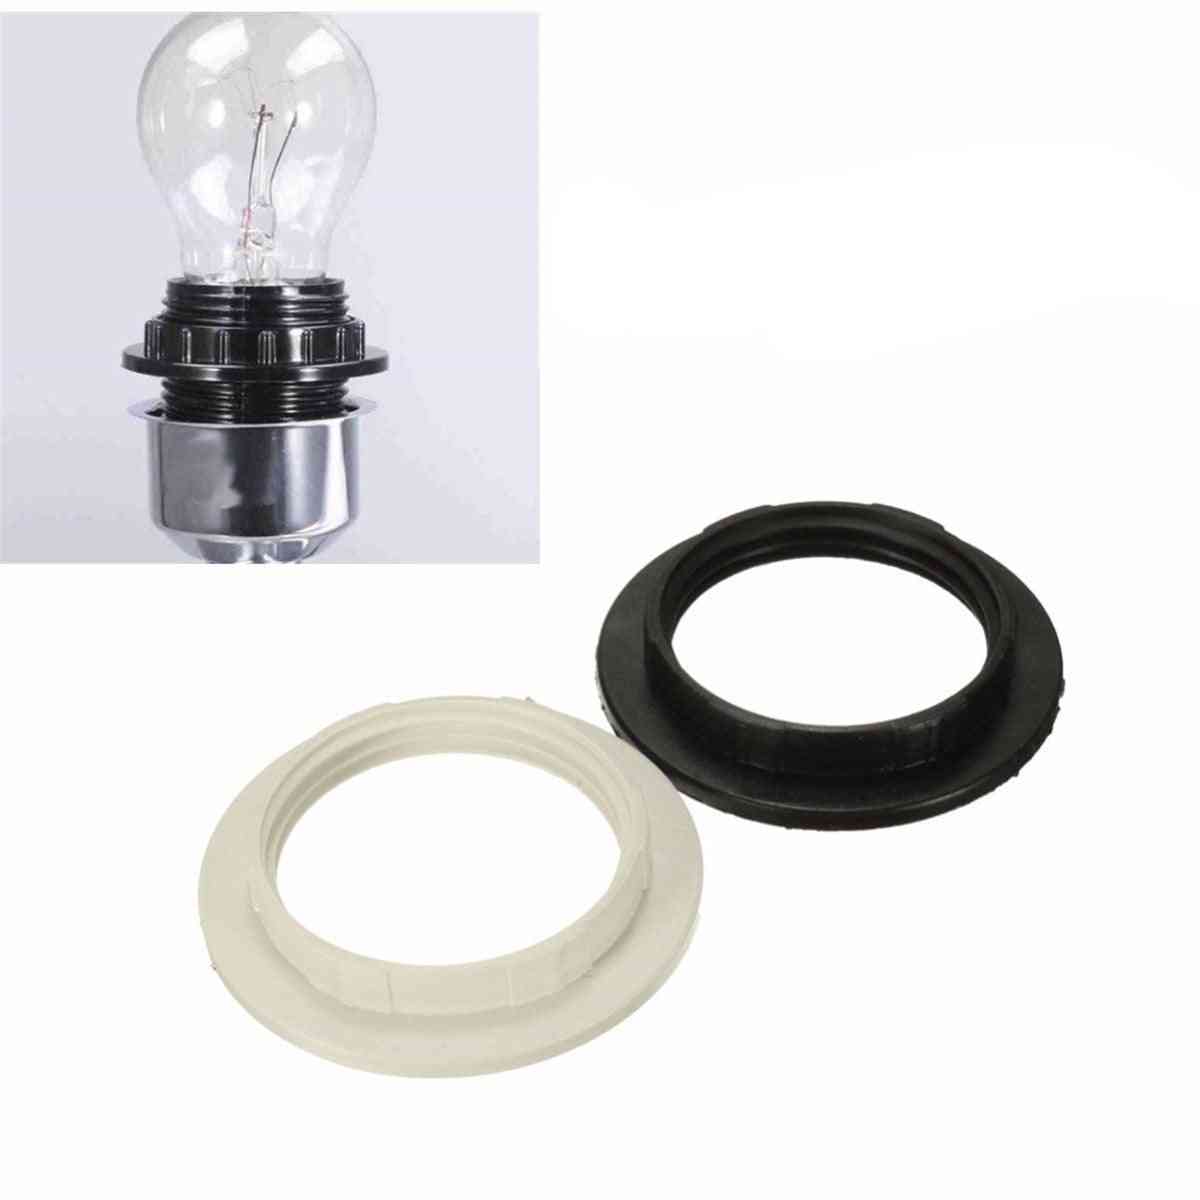 40mm / 57mm e27 lampeskærmadapter lys nuancer, krave ringadapter til pæreholder lampeskærm tilbehør - sort